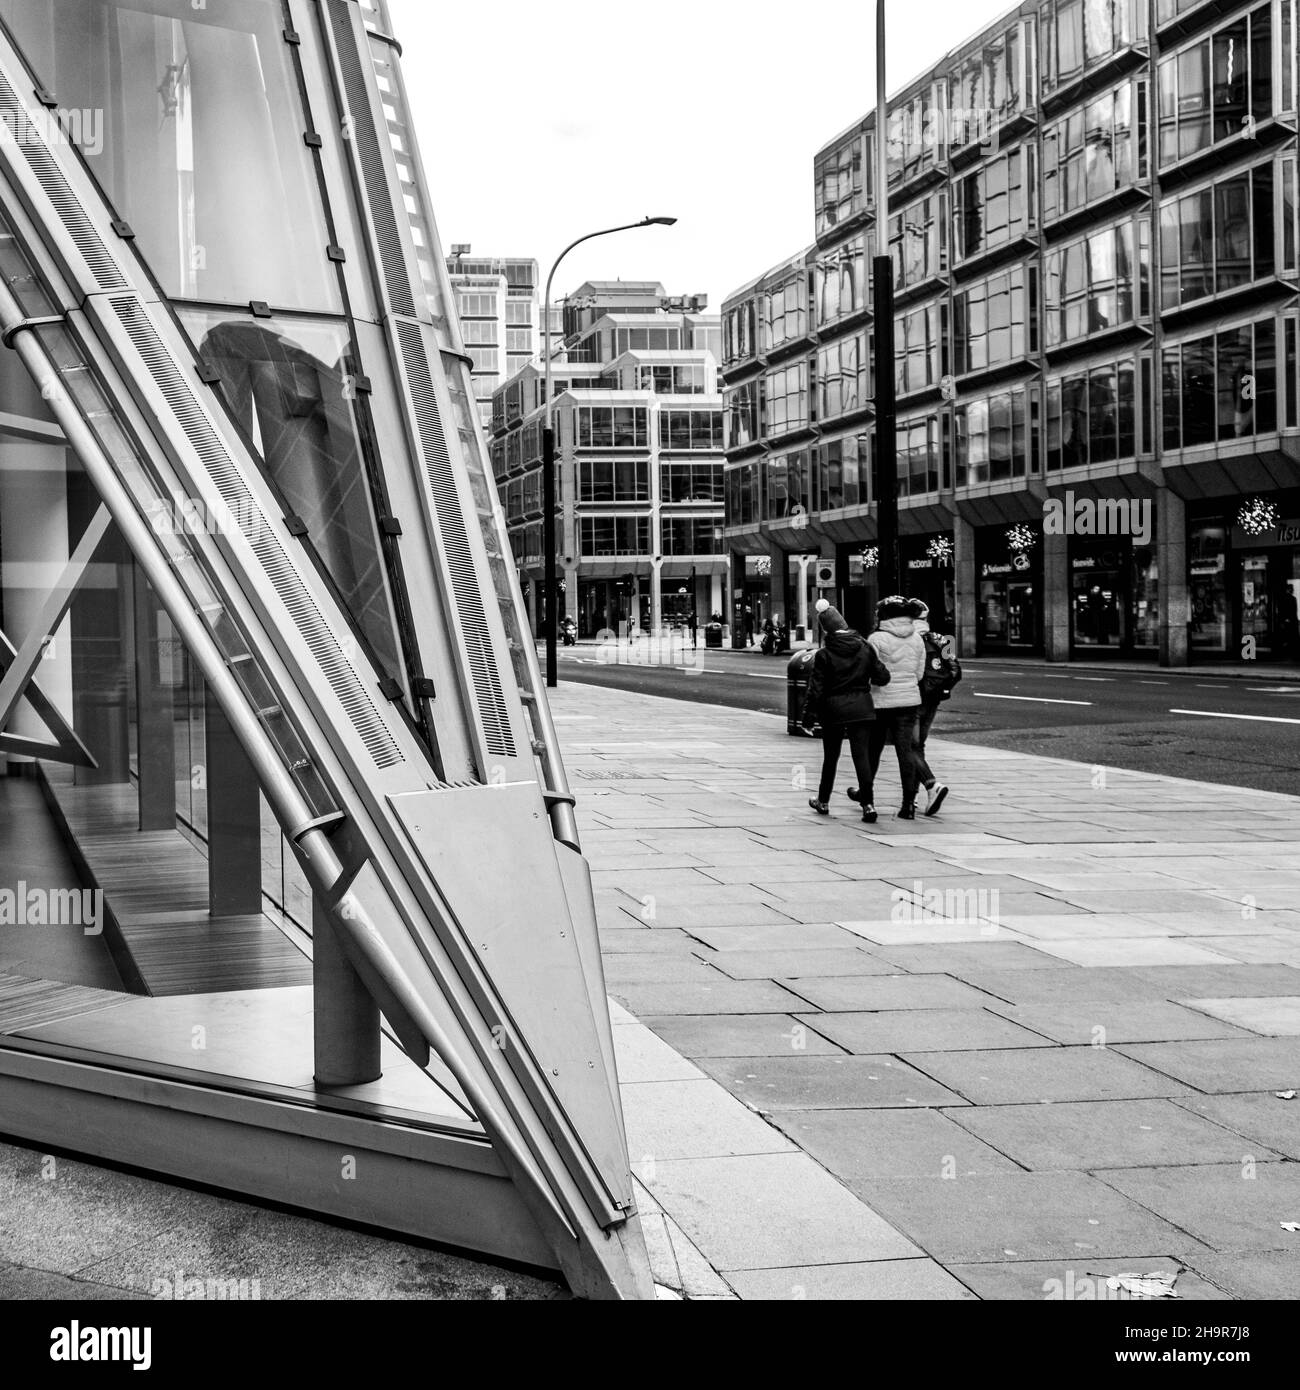 Centre de Londres Royaume-Uni novembre 21 2021, petit groupe de personnes passant devant Cardinal place Victoria Street Londres dispositif architectural Banque D'Images